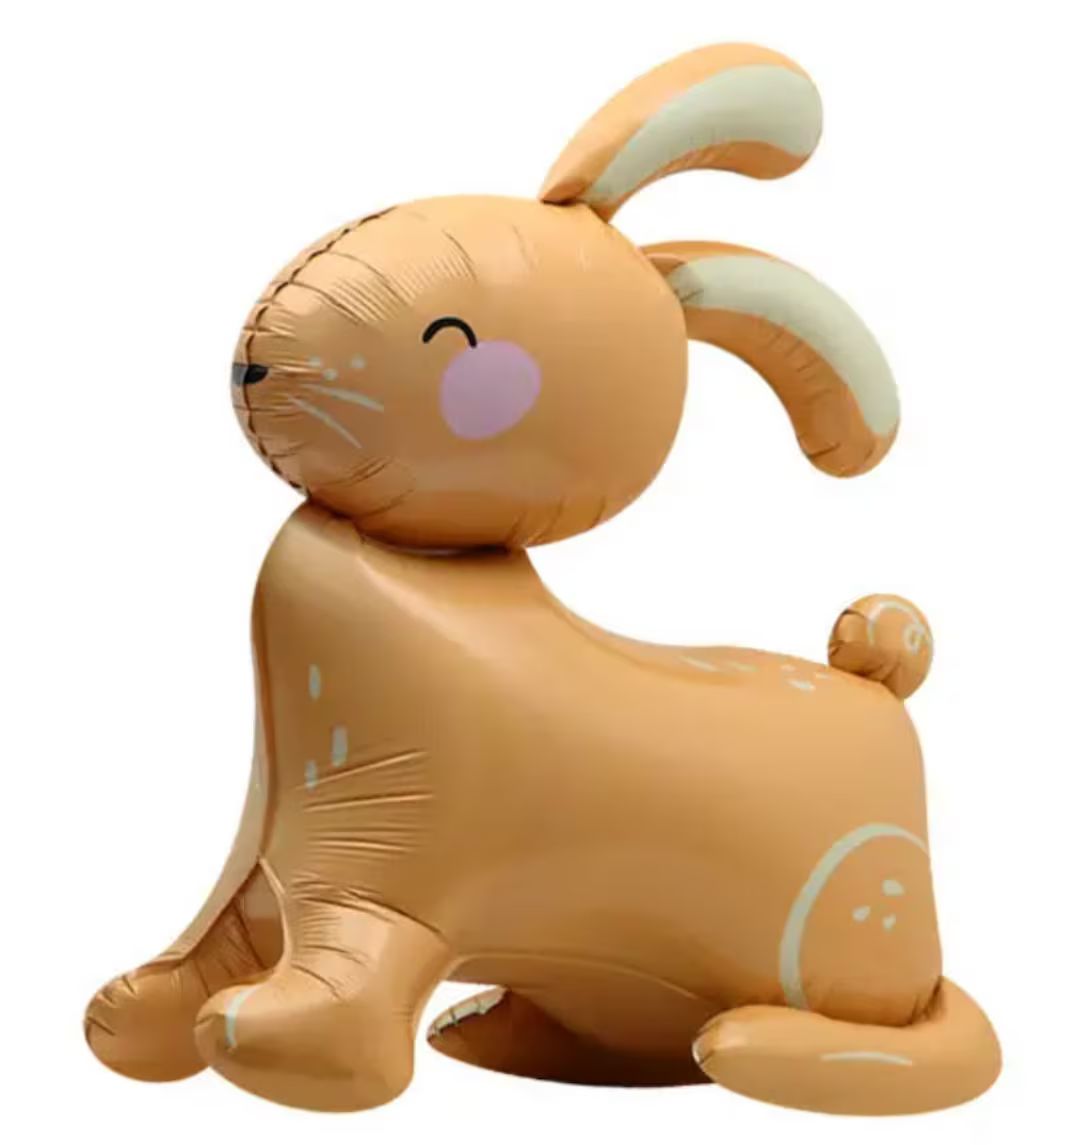 Bunny Balloon Party Decor | Easter Balloon, Spring rabbit balloon, Easter Bunny foil balloon for ... | Etsy (US)